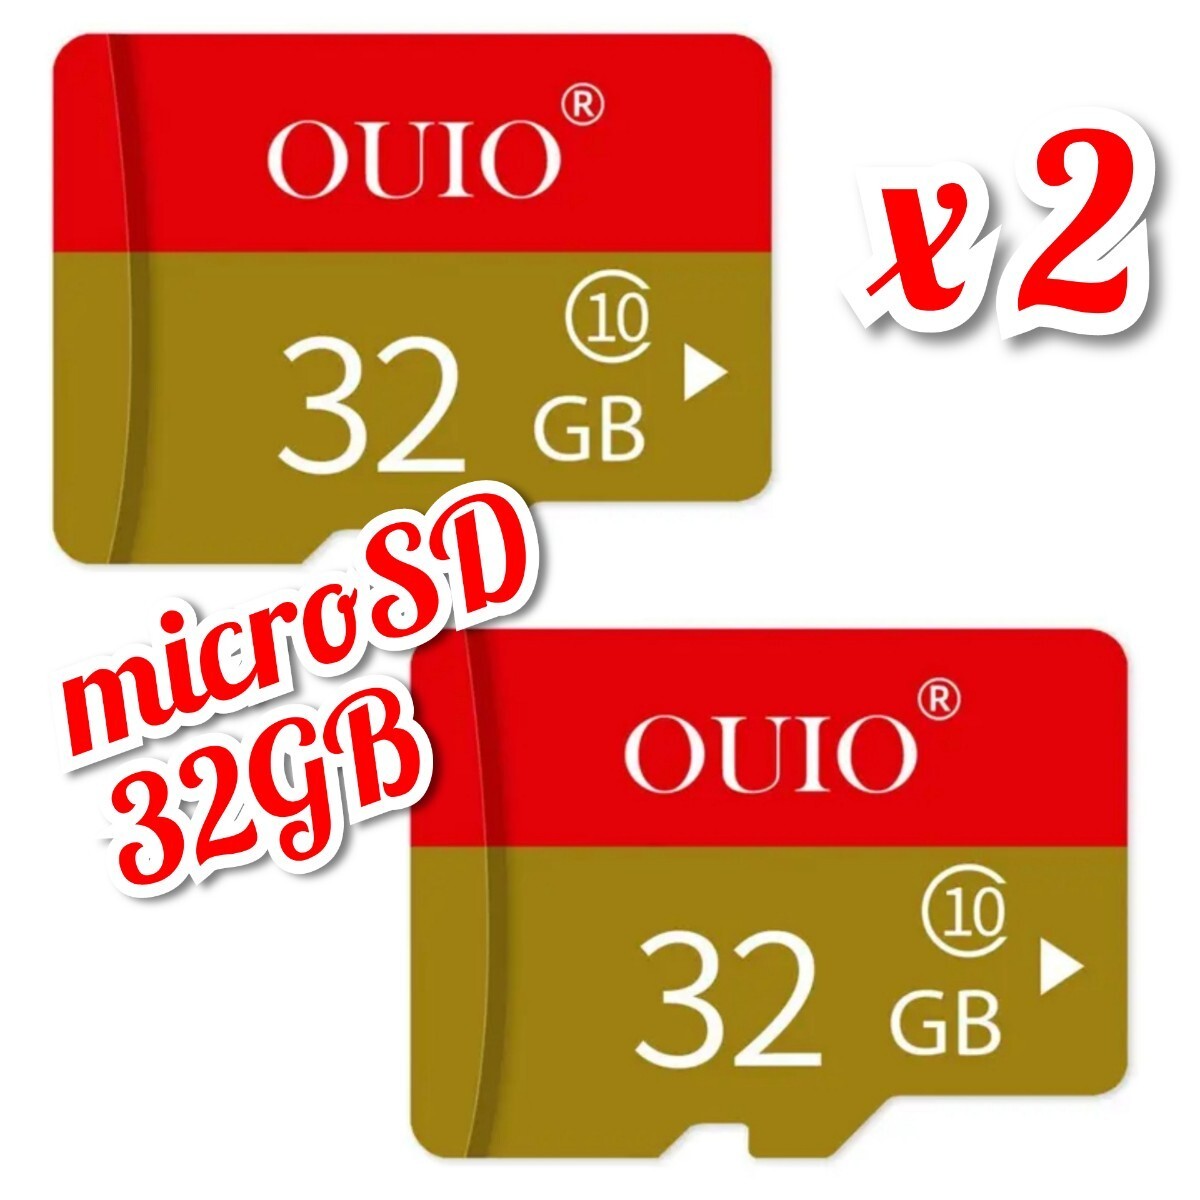 【送料無料】2枚セット マイクロSDカード 32GB 2枚 class10 2個 高速 microSD microSDHC マイクロSD OUIO 32GB RED-GOLD _画像2